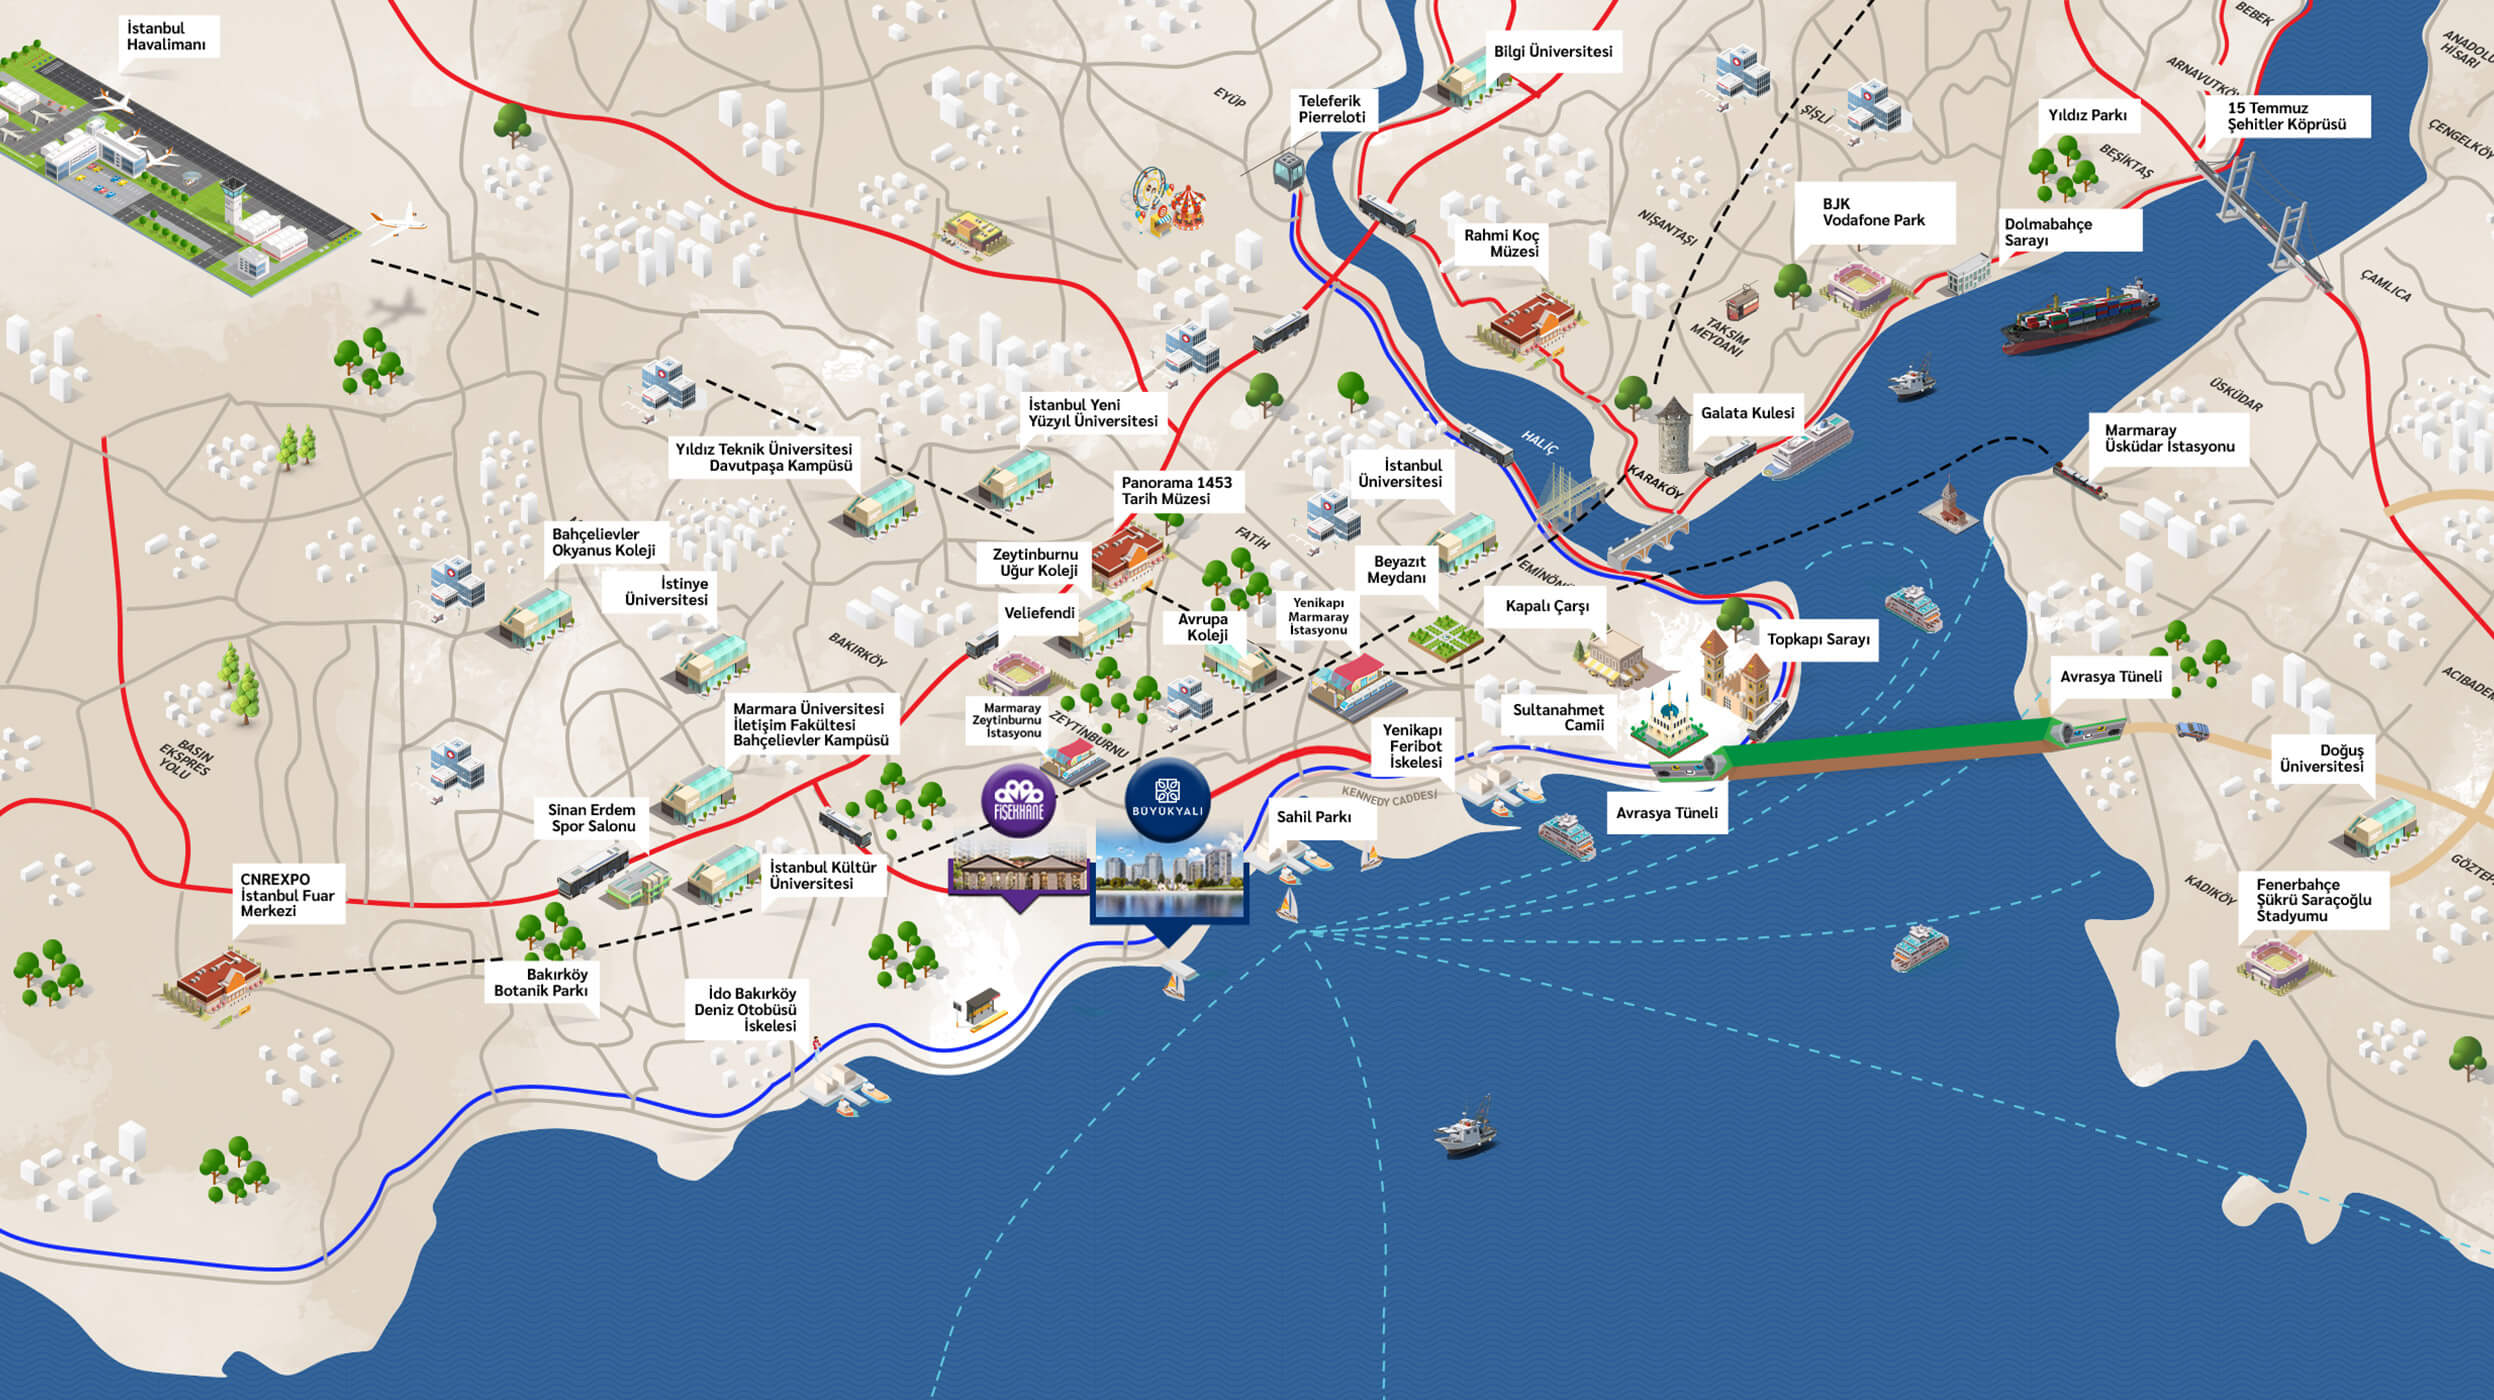 Ist на русском языке. Аэропорты Стамбула на карте. Стамбул новый аэропорт ist на карте. Новый аэропорт Стамбула на карте Стамбула. Стамбул аэропорты международные на карте.